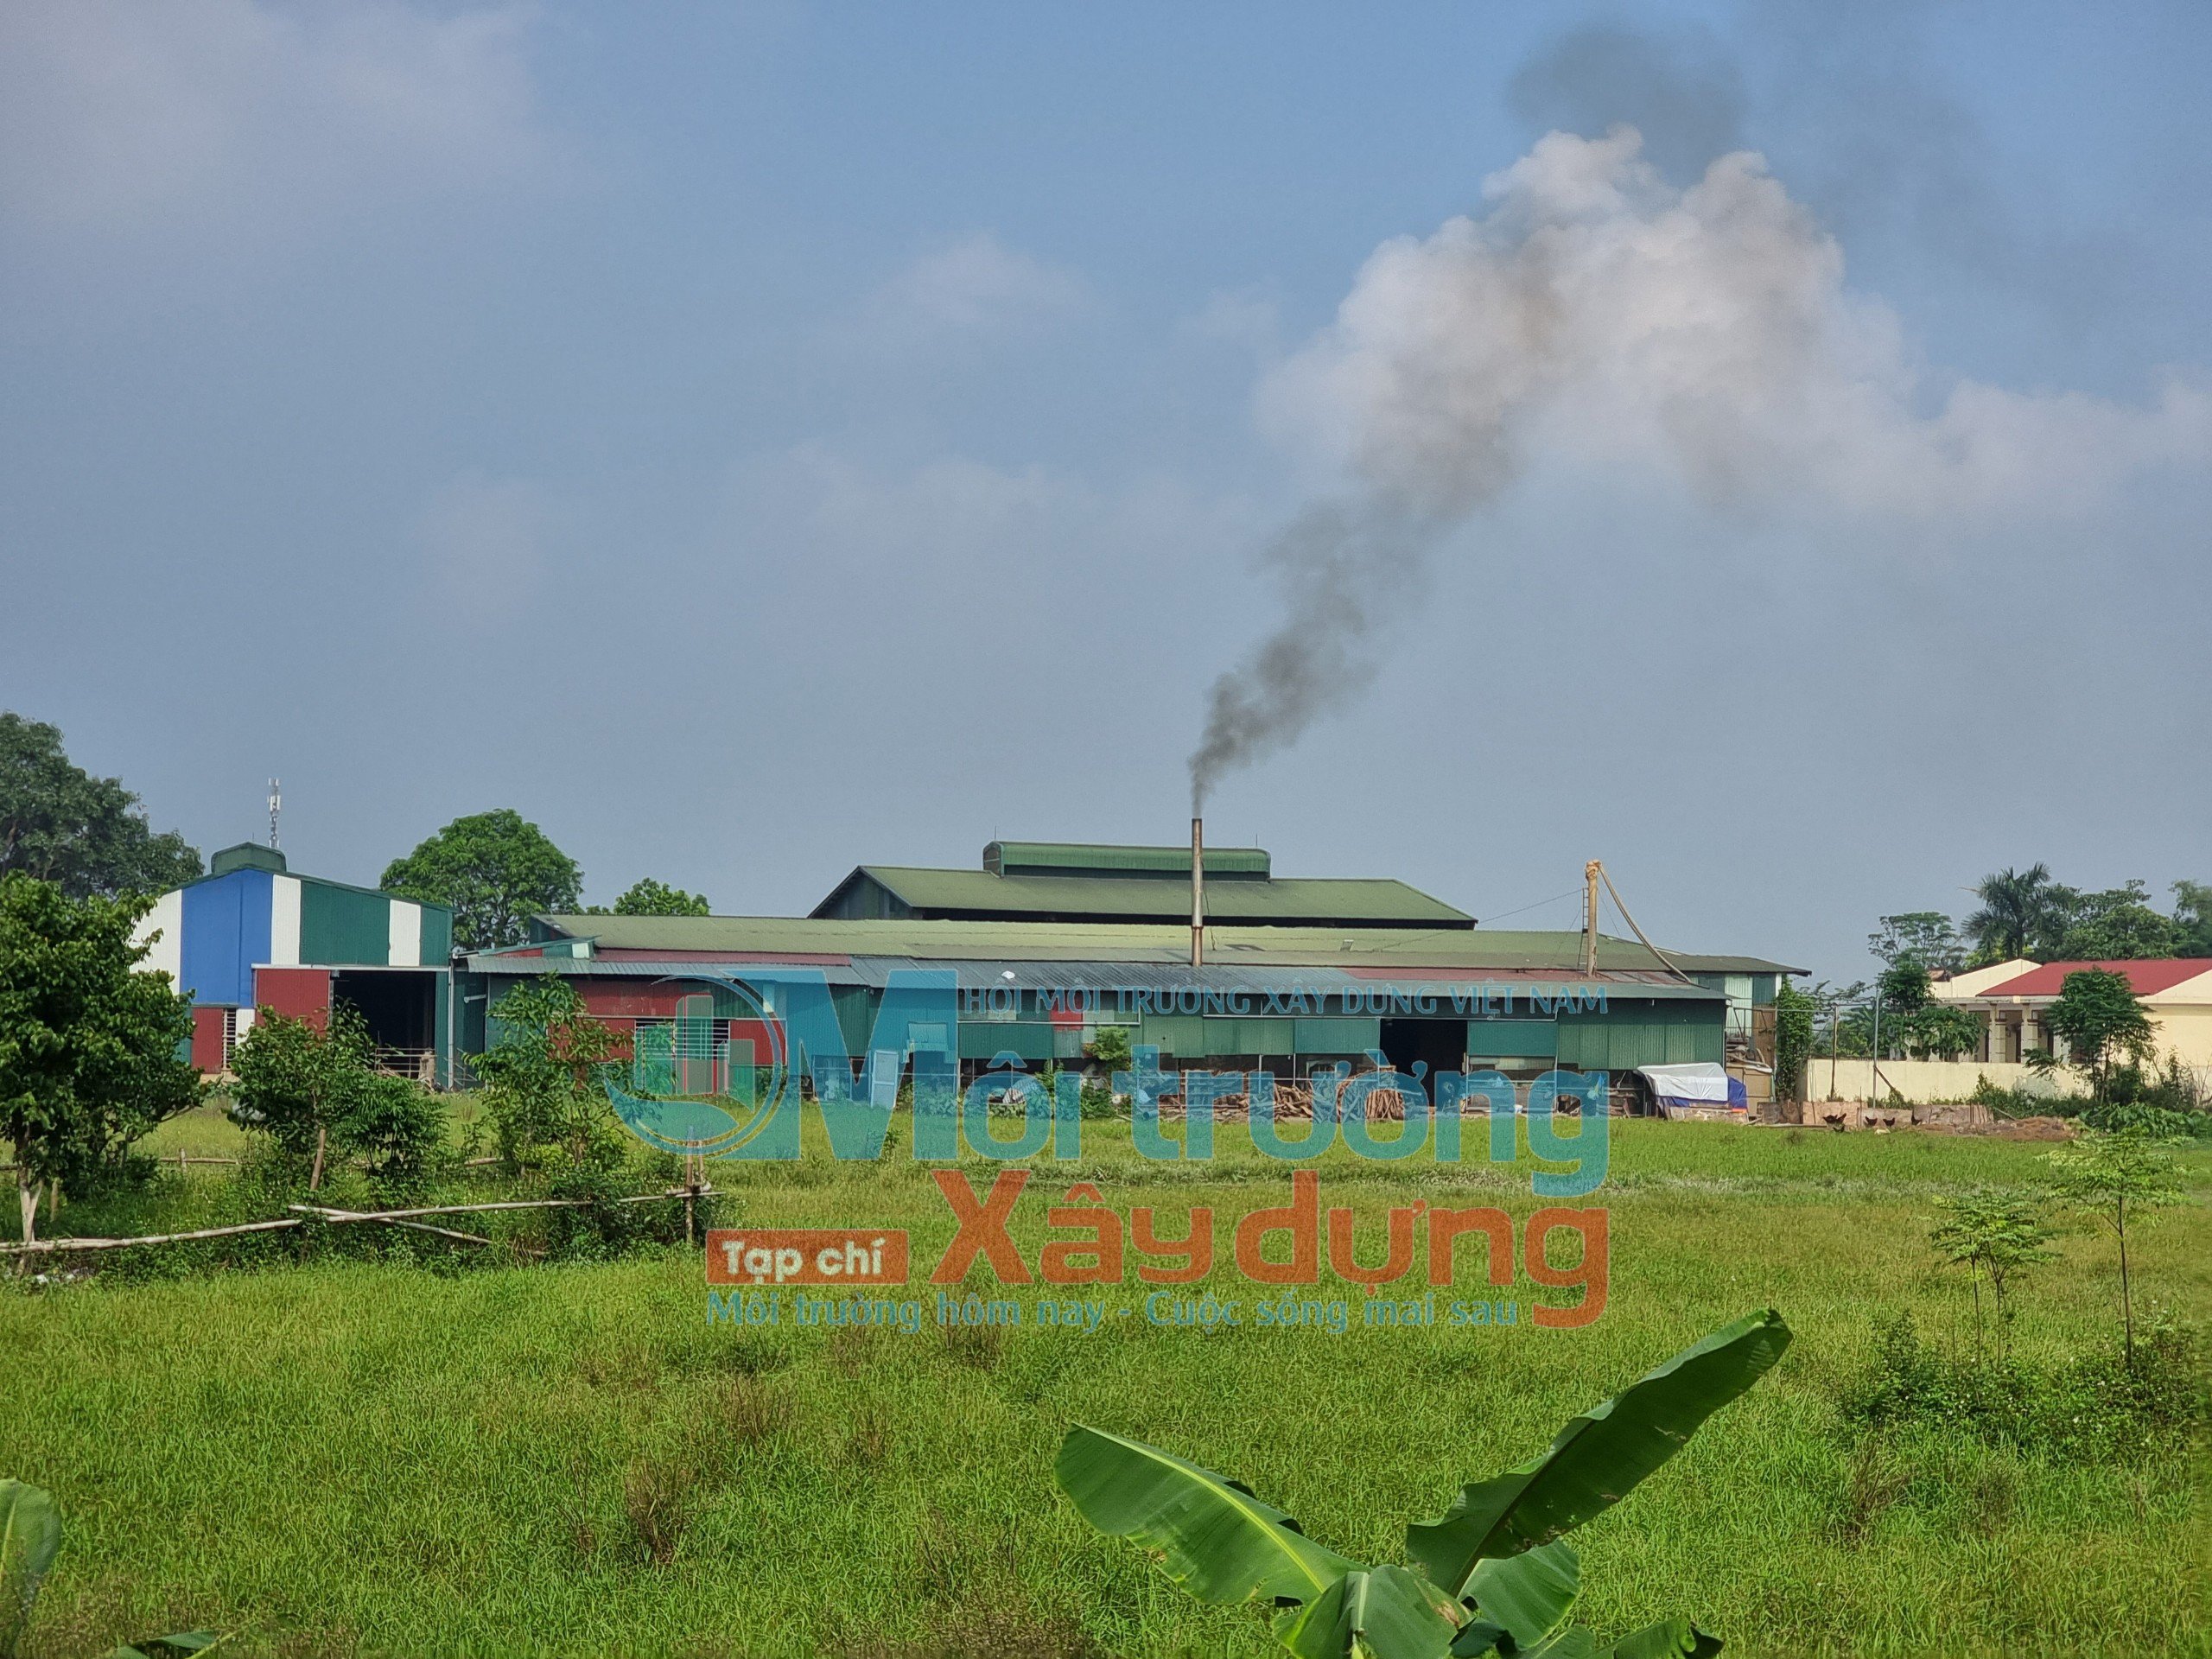 Dân Hòa (Thanh Oai), Hà Nội: Nhà xưởng xây dựng trên đất công, gây ô nhiễm môi trường tại sao không xử lý?